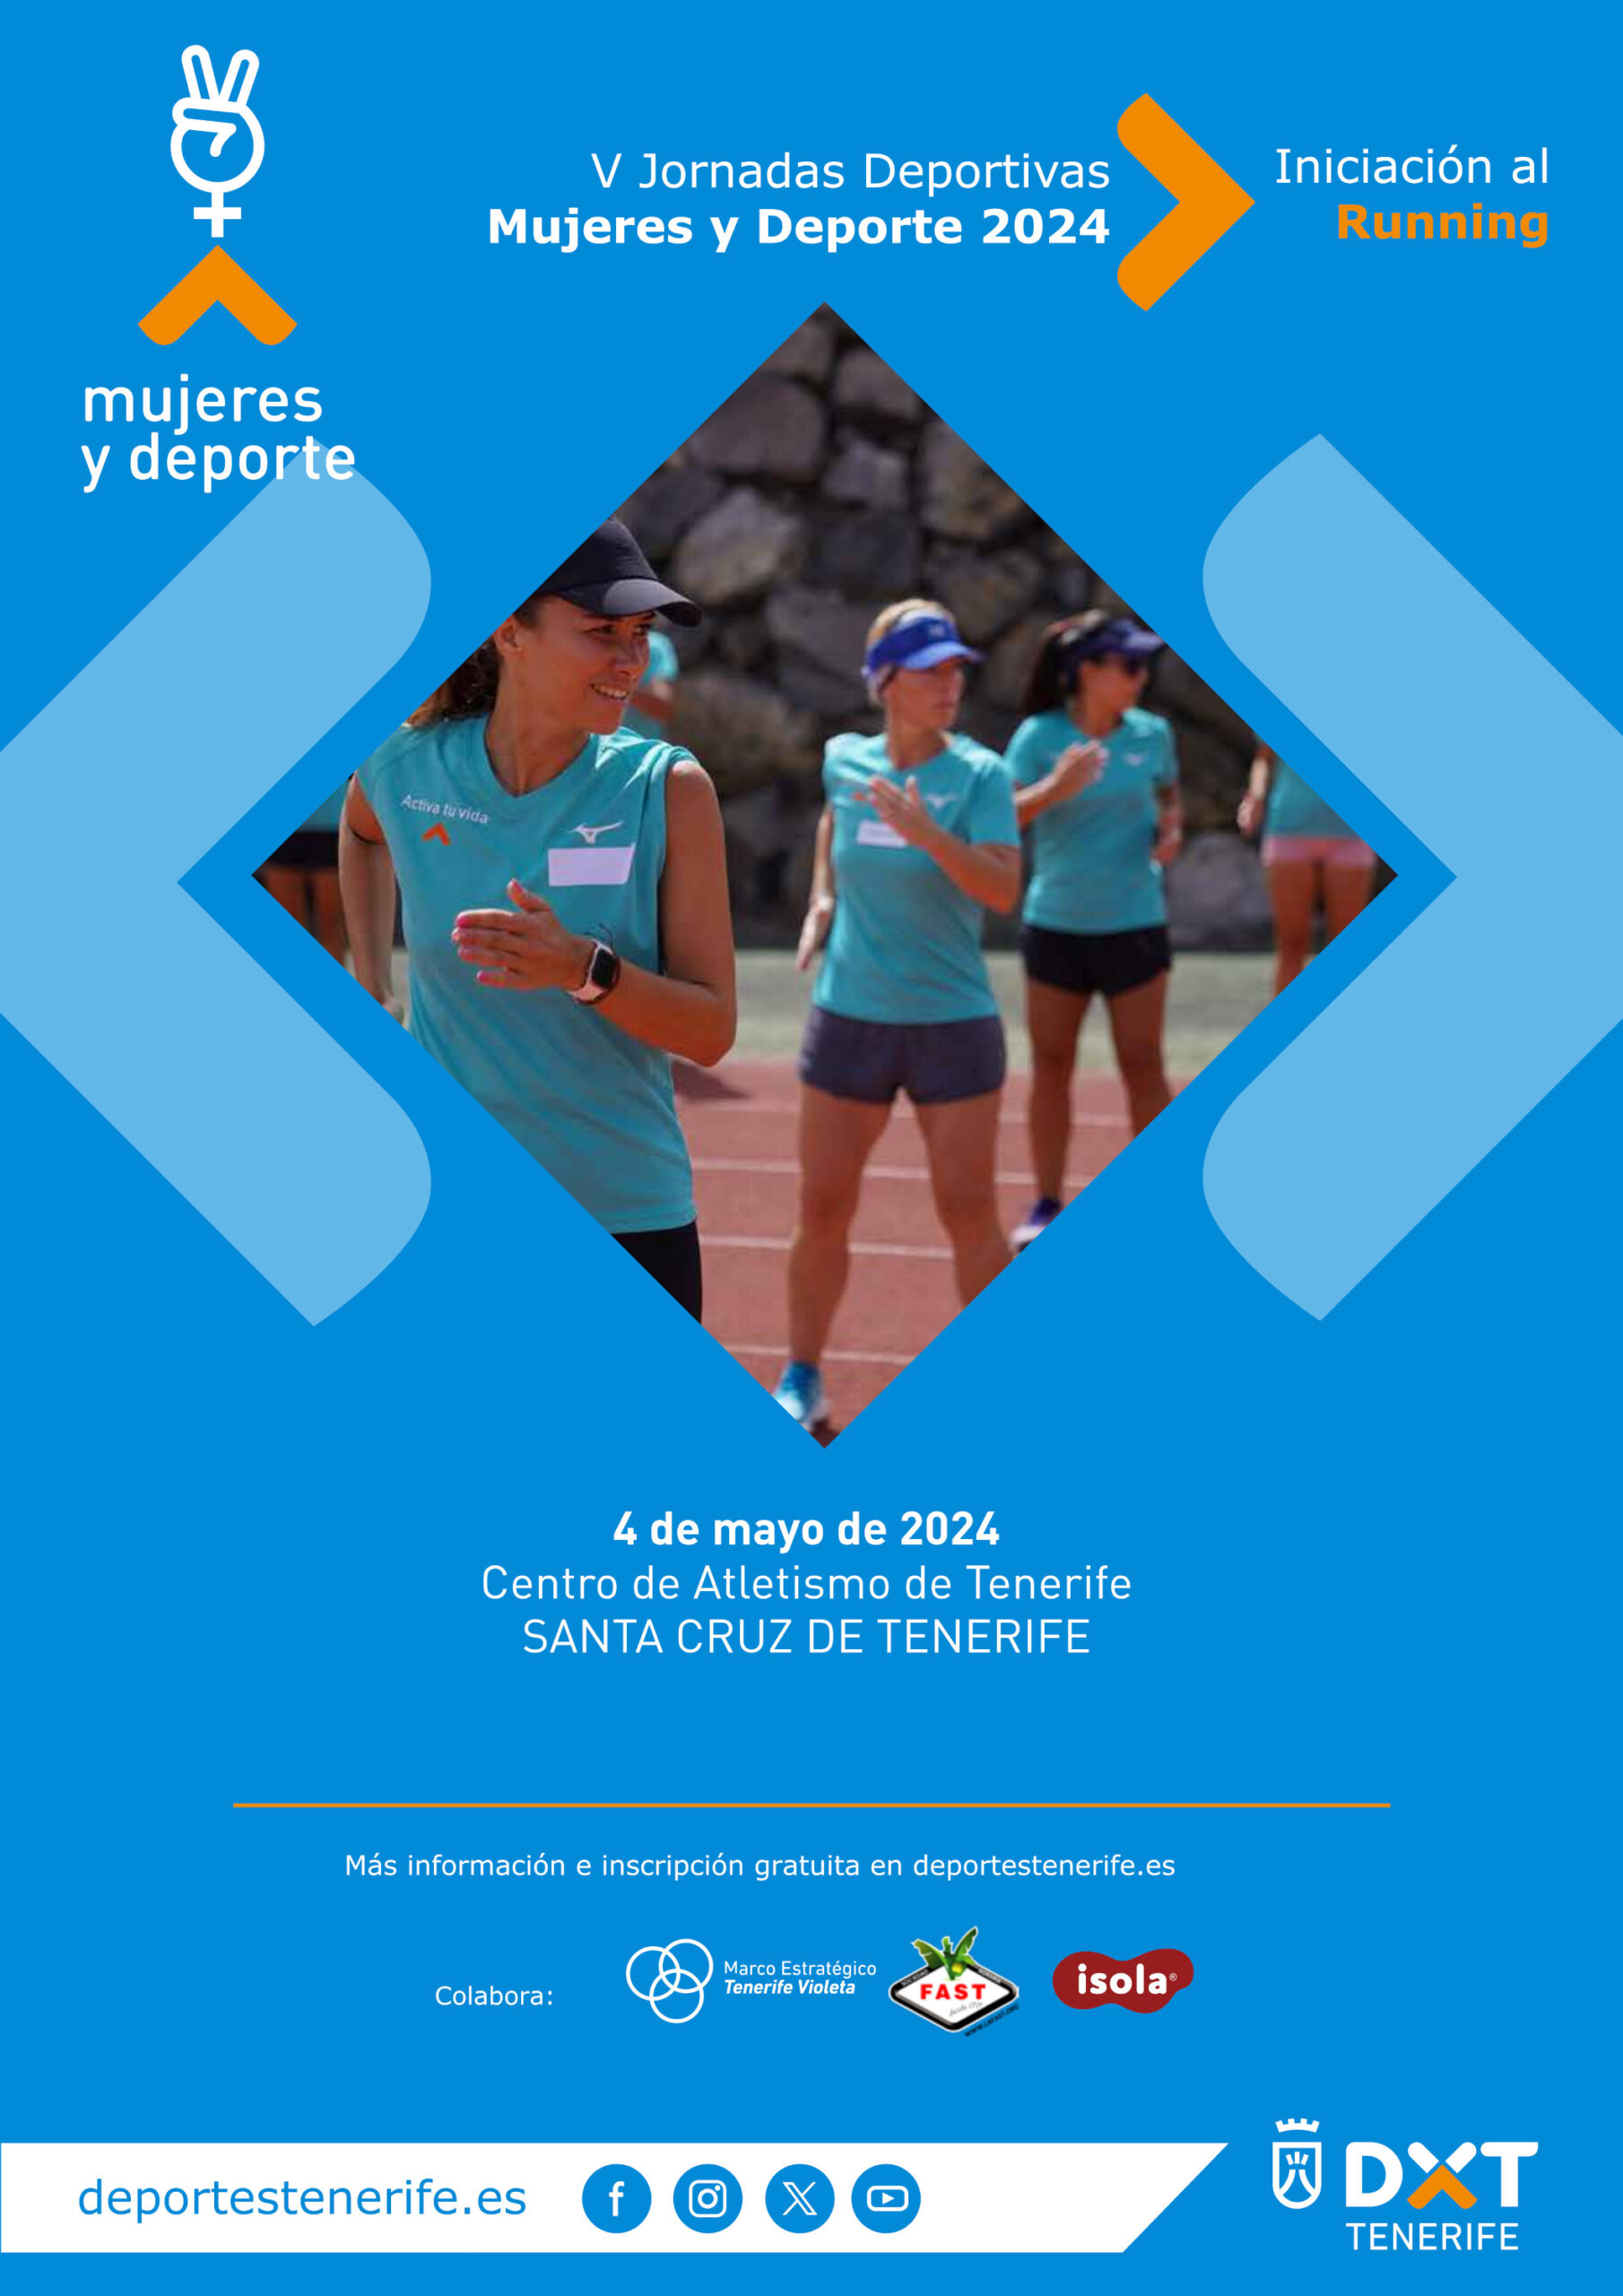 V Jornadas Deportivas Mujeres y Deporte 2024 - Iniciación al Running